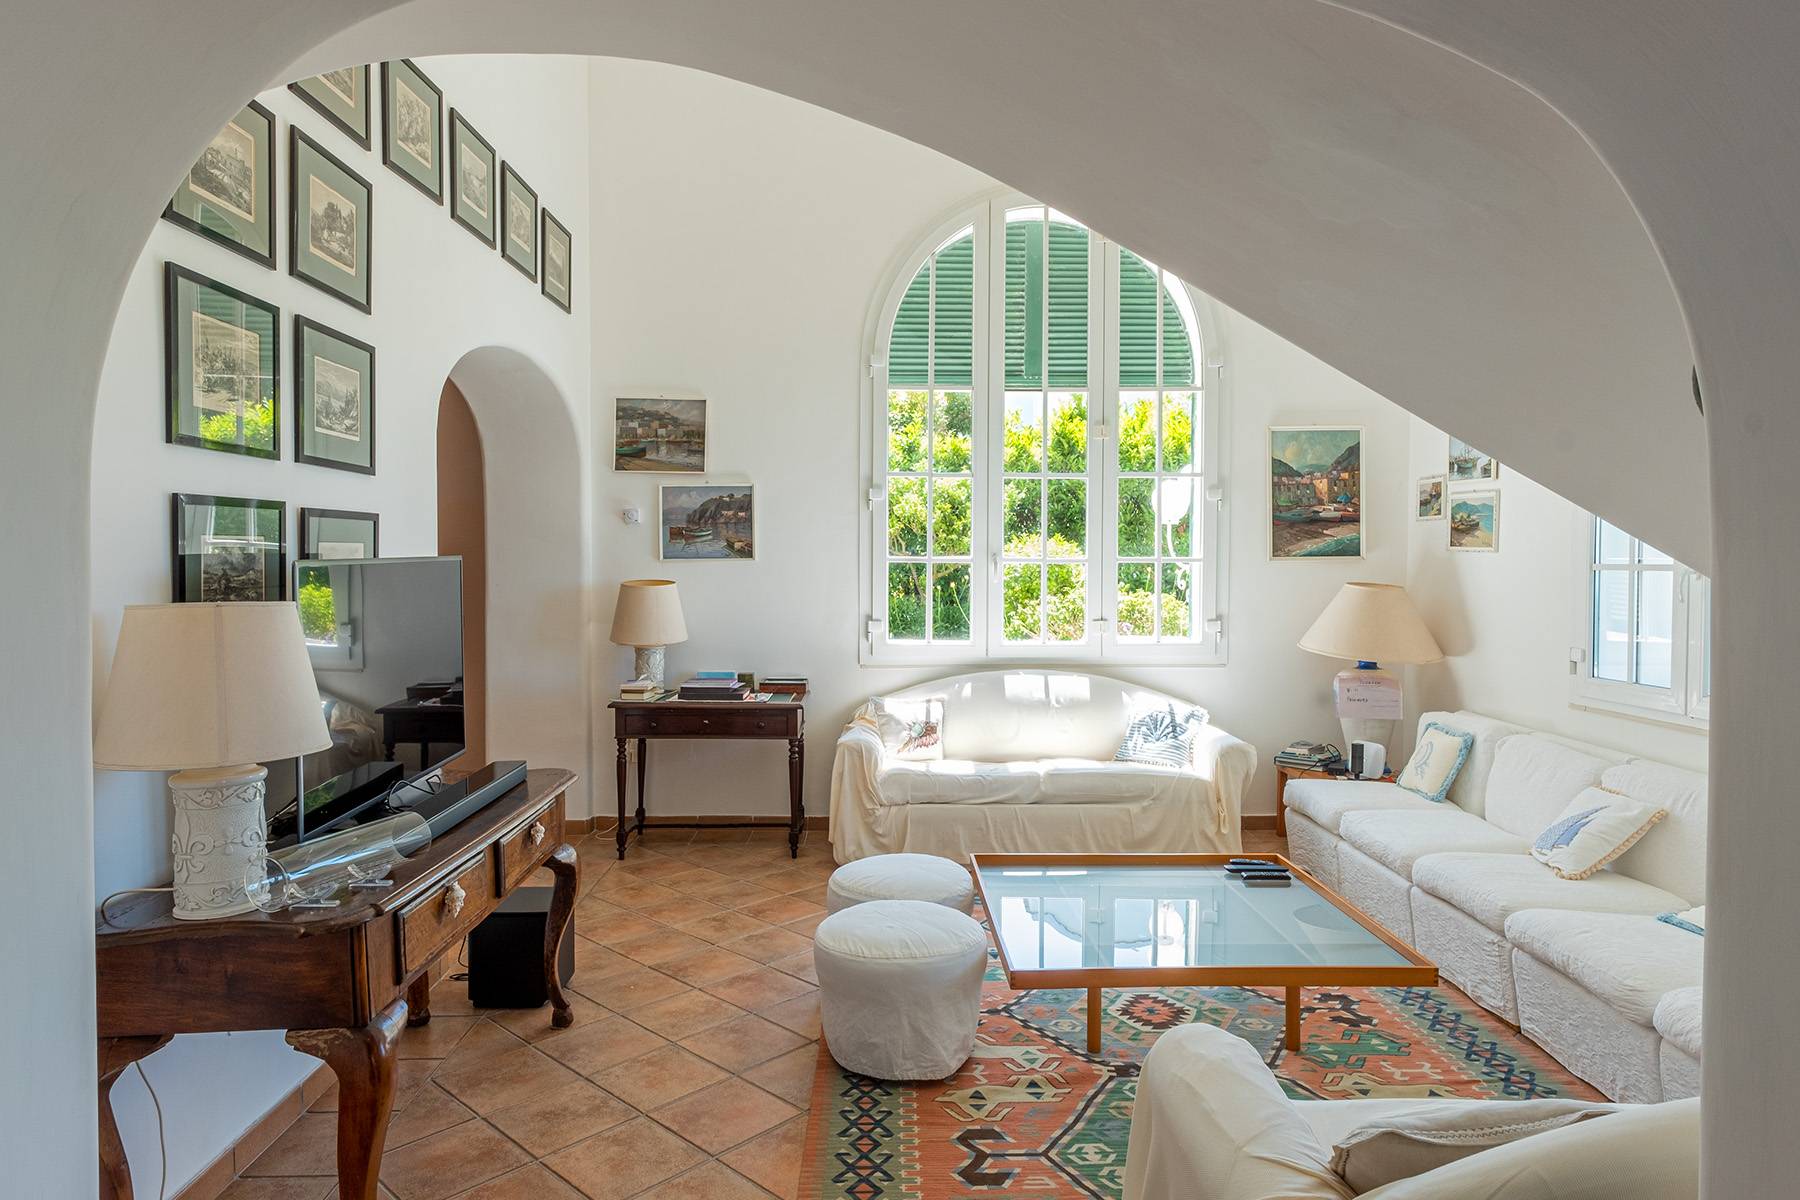 Villa in Vendita a Capri: 5 locali, 300 mq - Foto 8